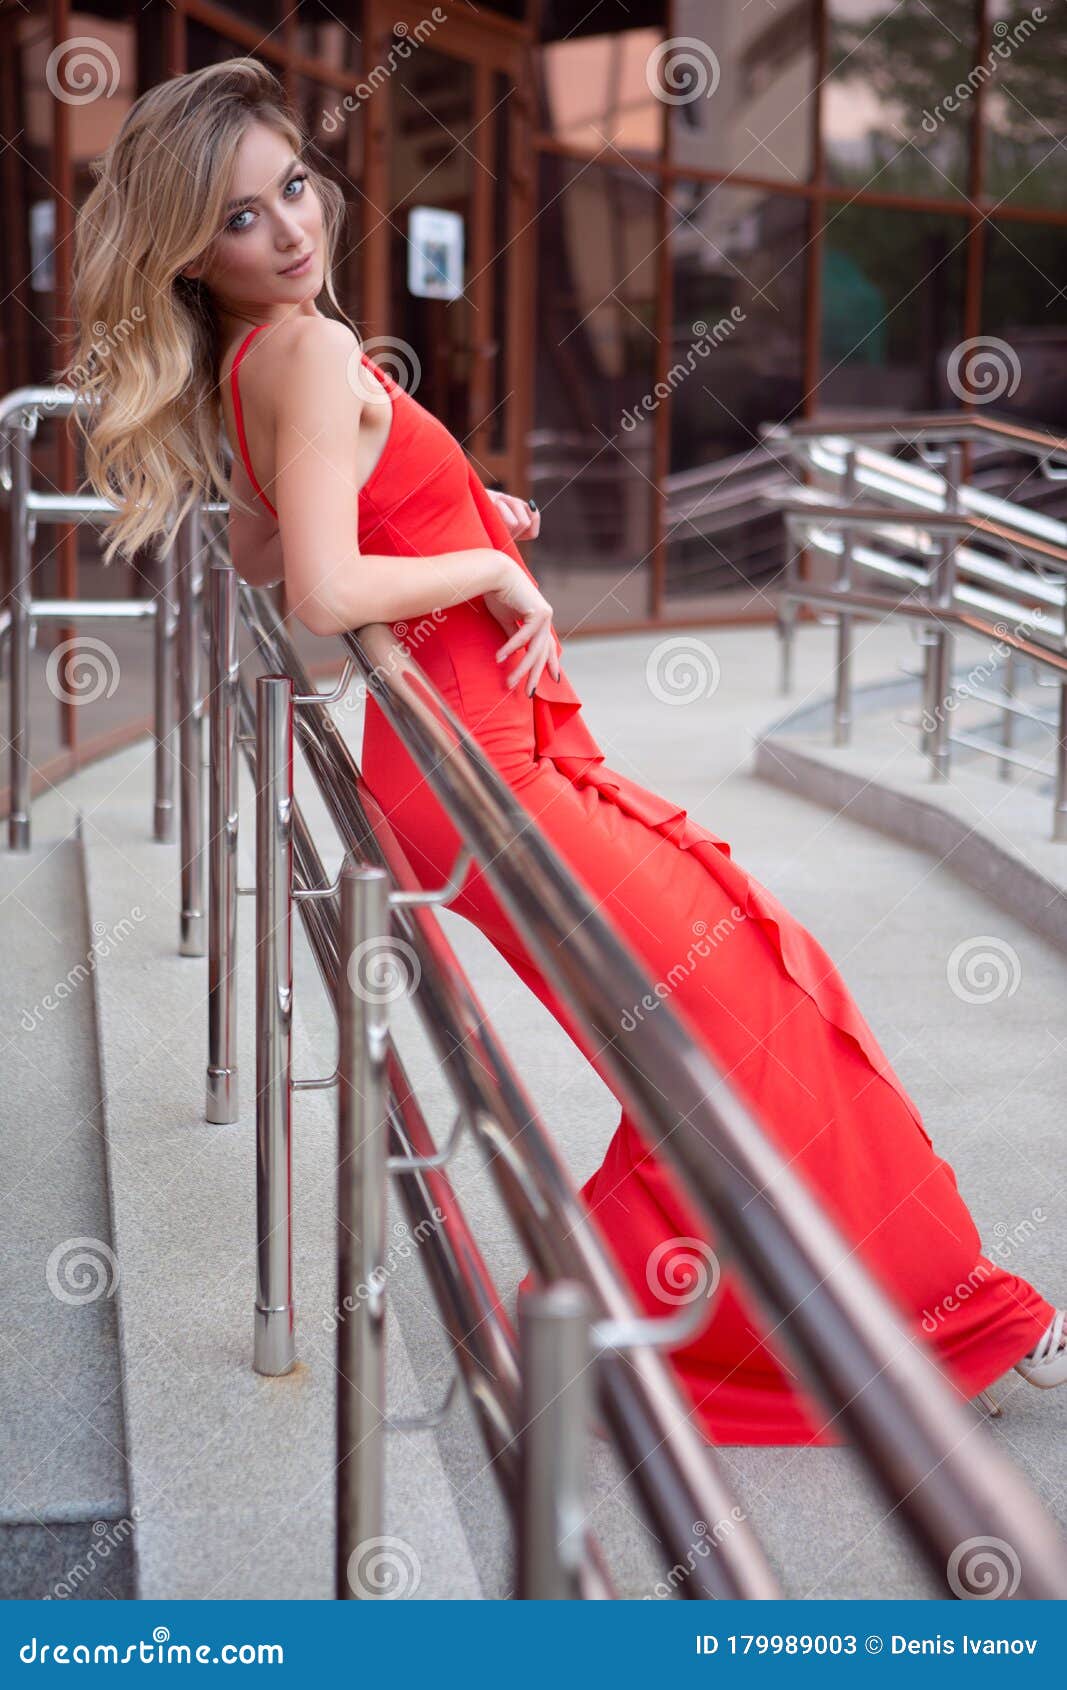 Una Donna Elegante E Sexy Con Un Vestito Rosso Stretto Si è Appoggiata Alla  Ringhiera Di Una Scala in Estate Immagine Stock - Immagine di bello,  femminilità: 179989003